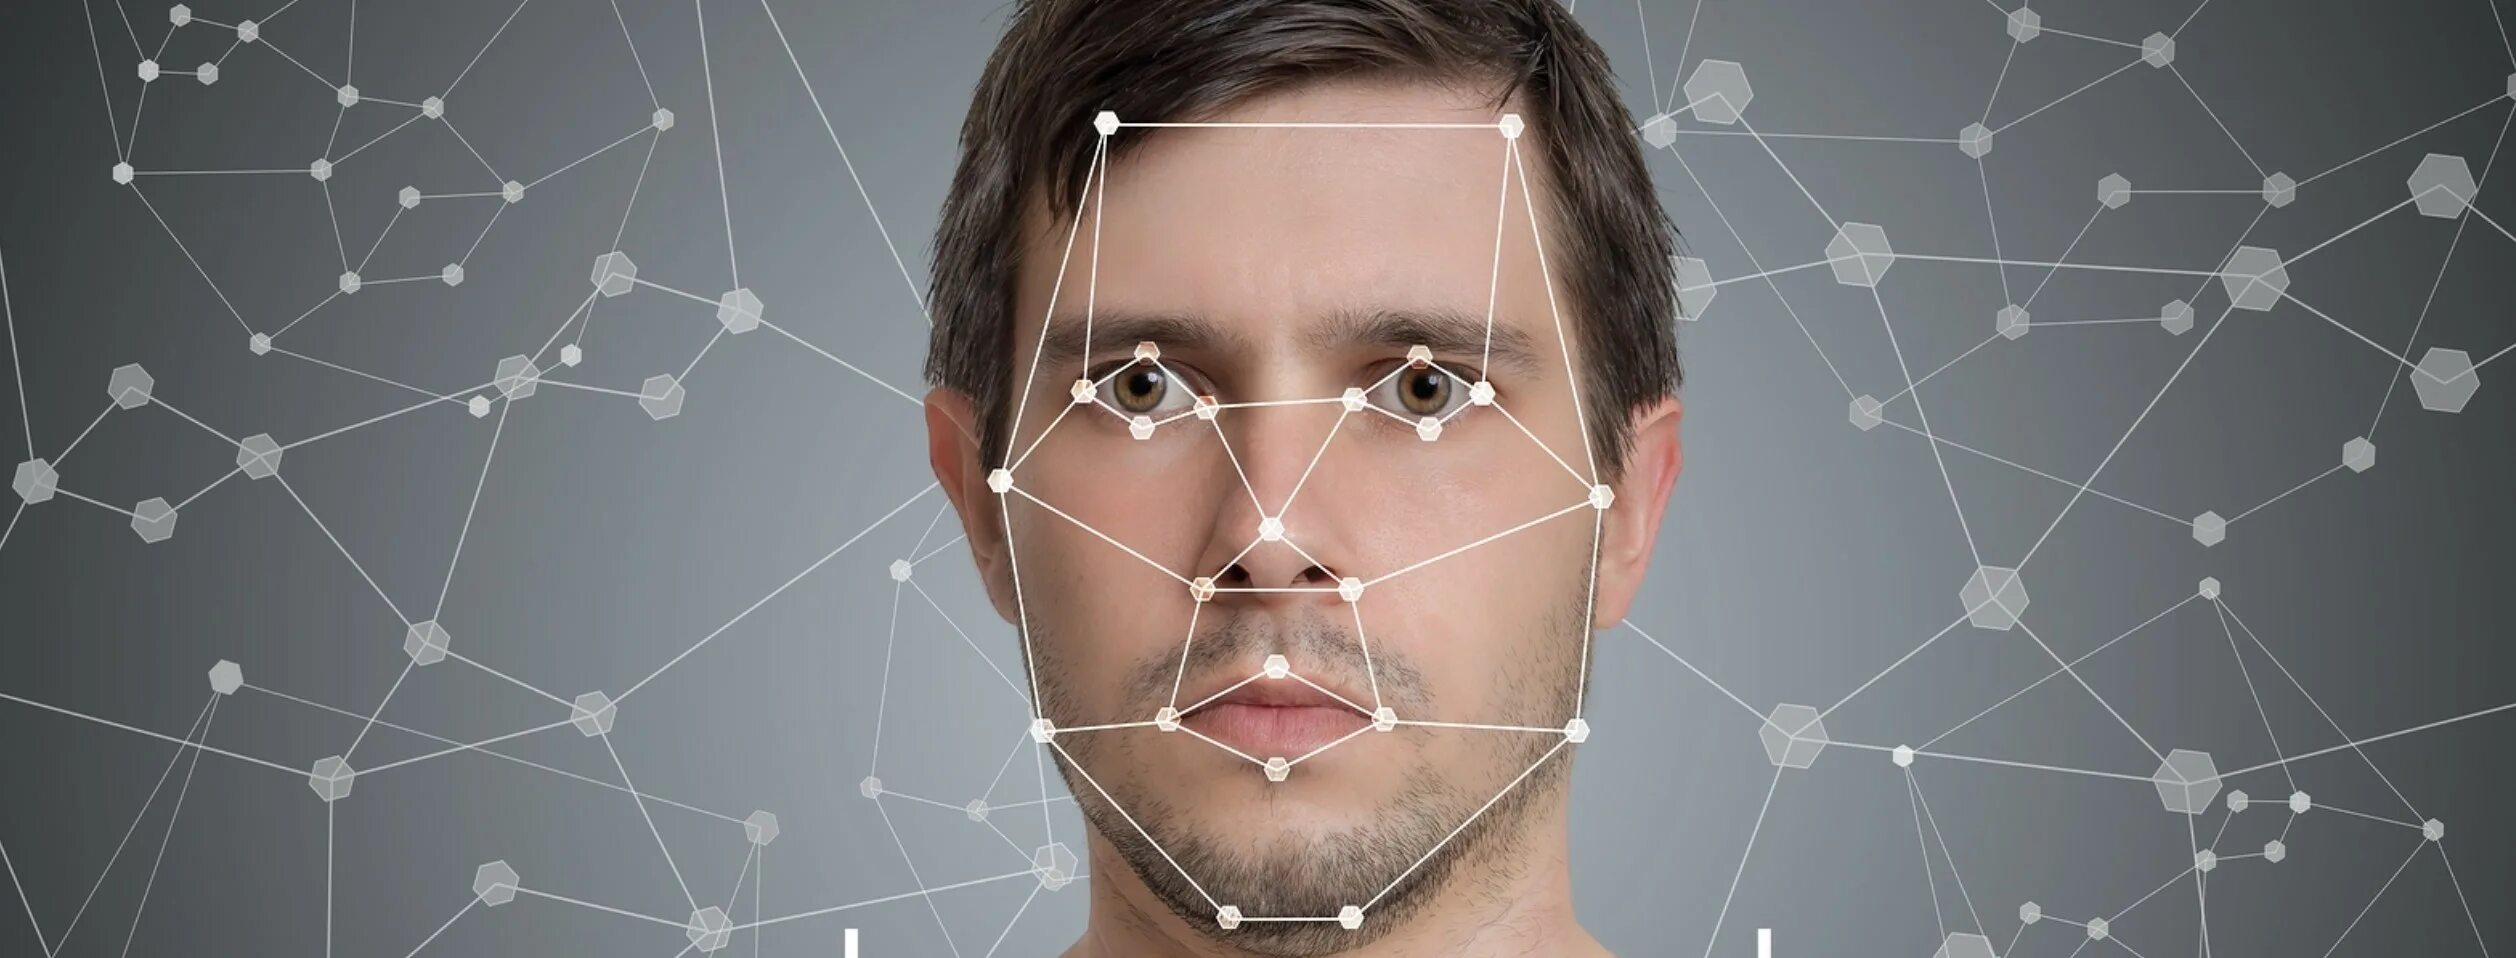 Распознавание лиц. Система распознавания лиц. Технология распознавания лиц. Биометрия лица.